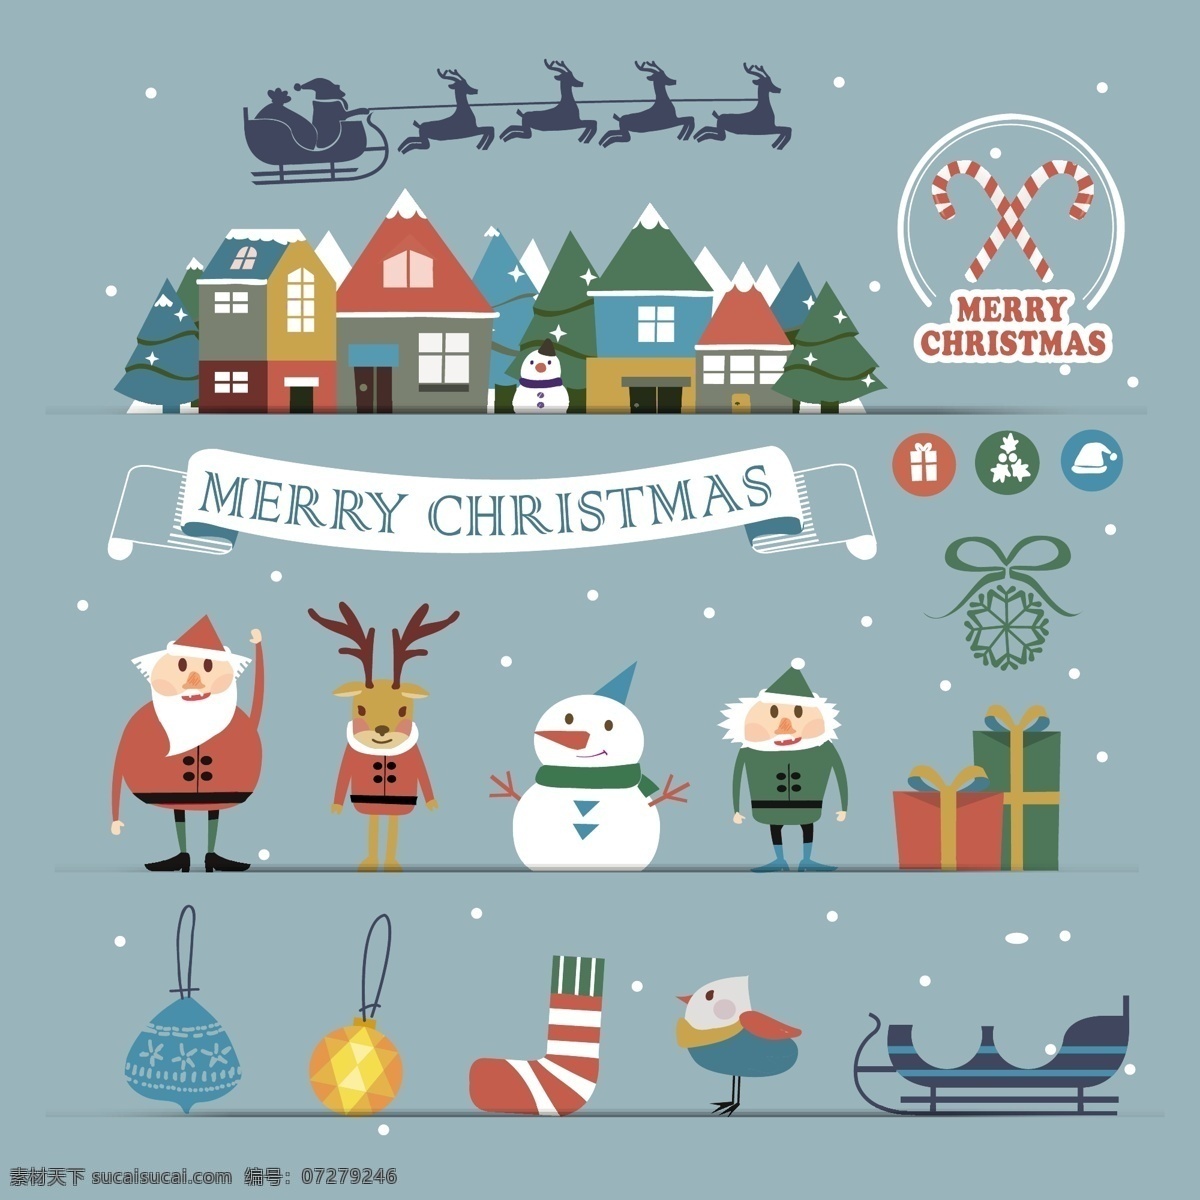 各种 卡通 圣诞 元素 装饰物 可爱卡通 圣诞元素 圣诞老人 麋鹿 下雪 屋子 圣诞雪橇 雪人 圣诞礼盒 铃铛 圣诞装饰物 袜子 吊球 横幅 矢量素材 卡通设计